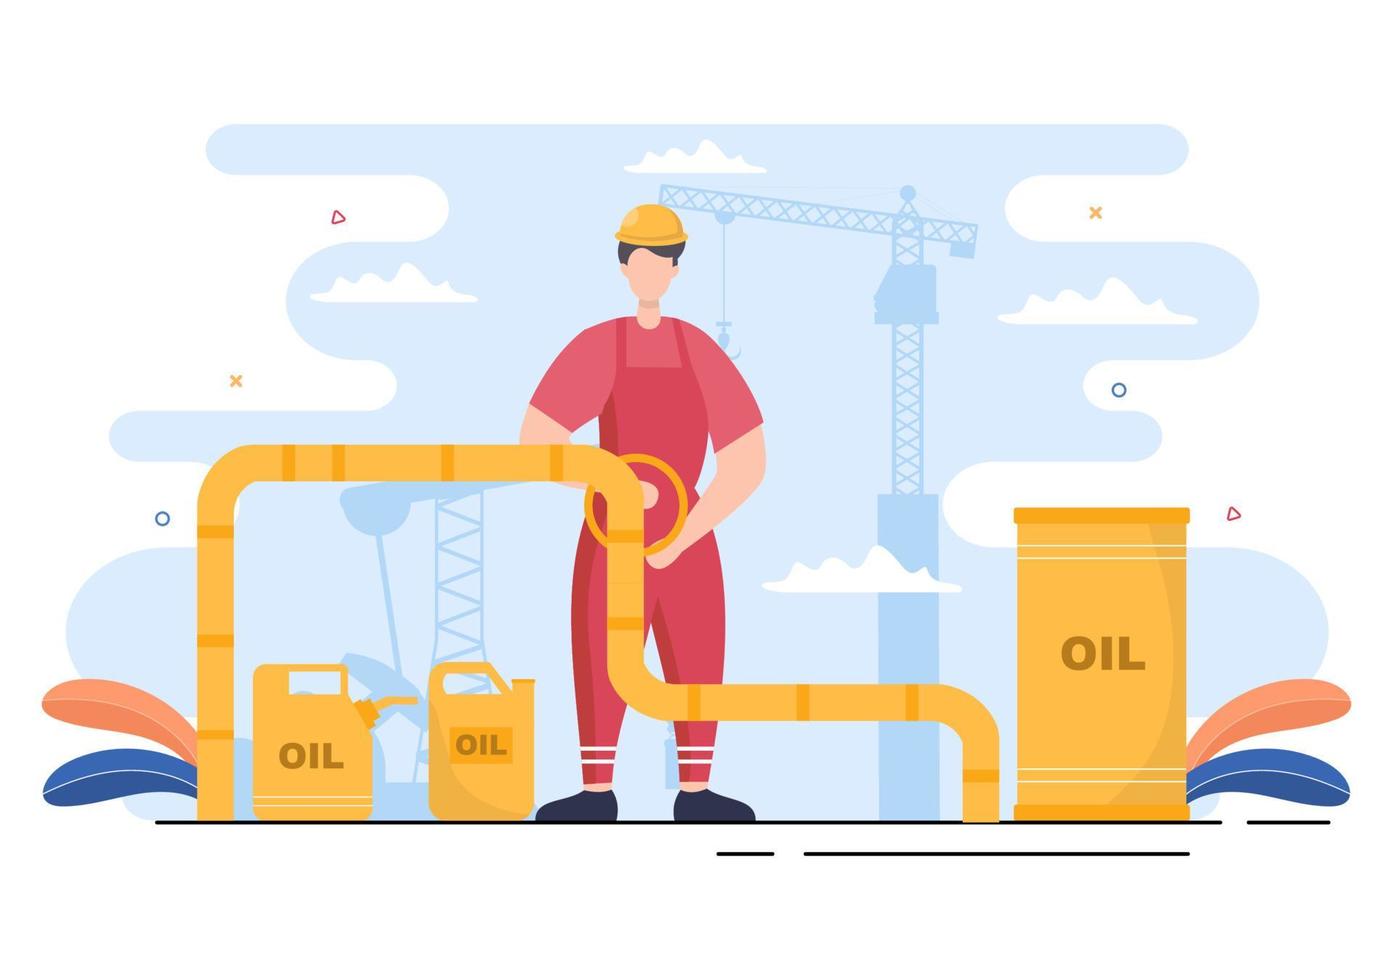 ilustração do vetor da indústria de petróleo e gás. extração de petróleo bruto, planta de refinaria, perfuração, posto de gasolina, tubulação de uso de tanque e entrega de combustível por transporte de caminhão